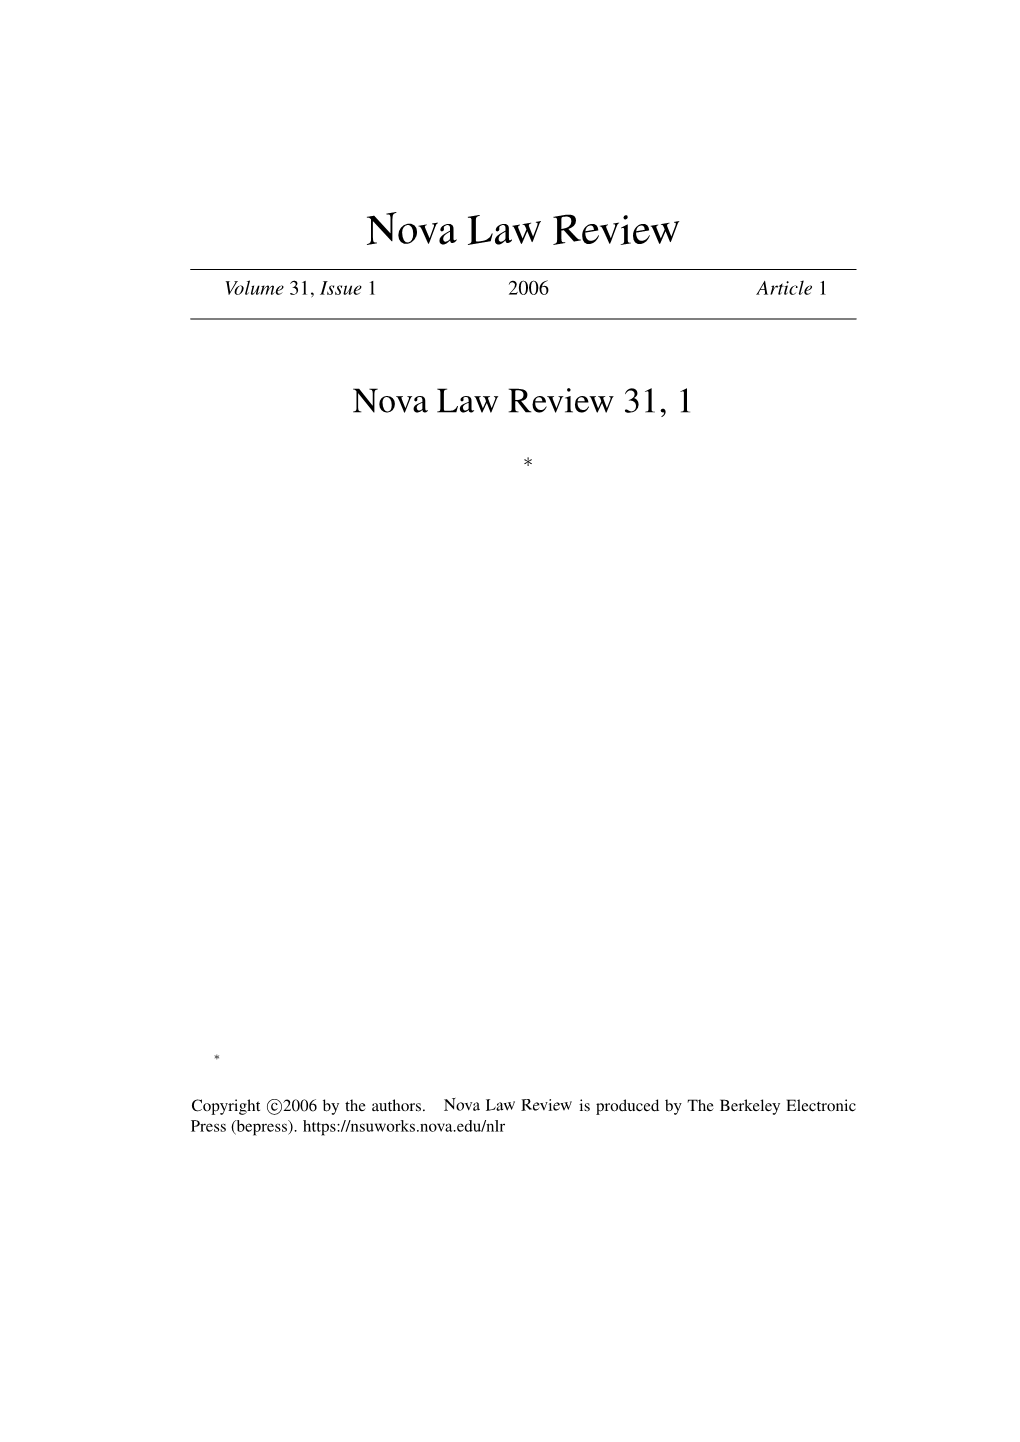 Nova Law Review 31, 1